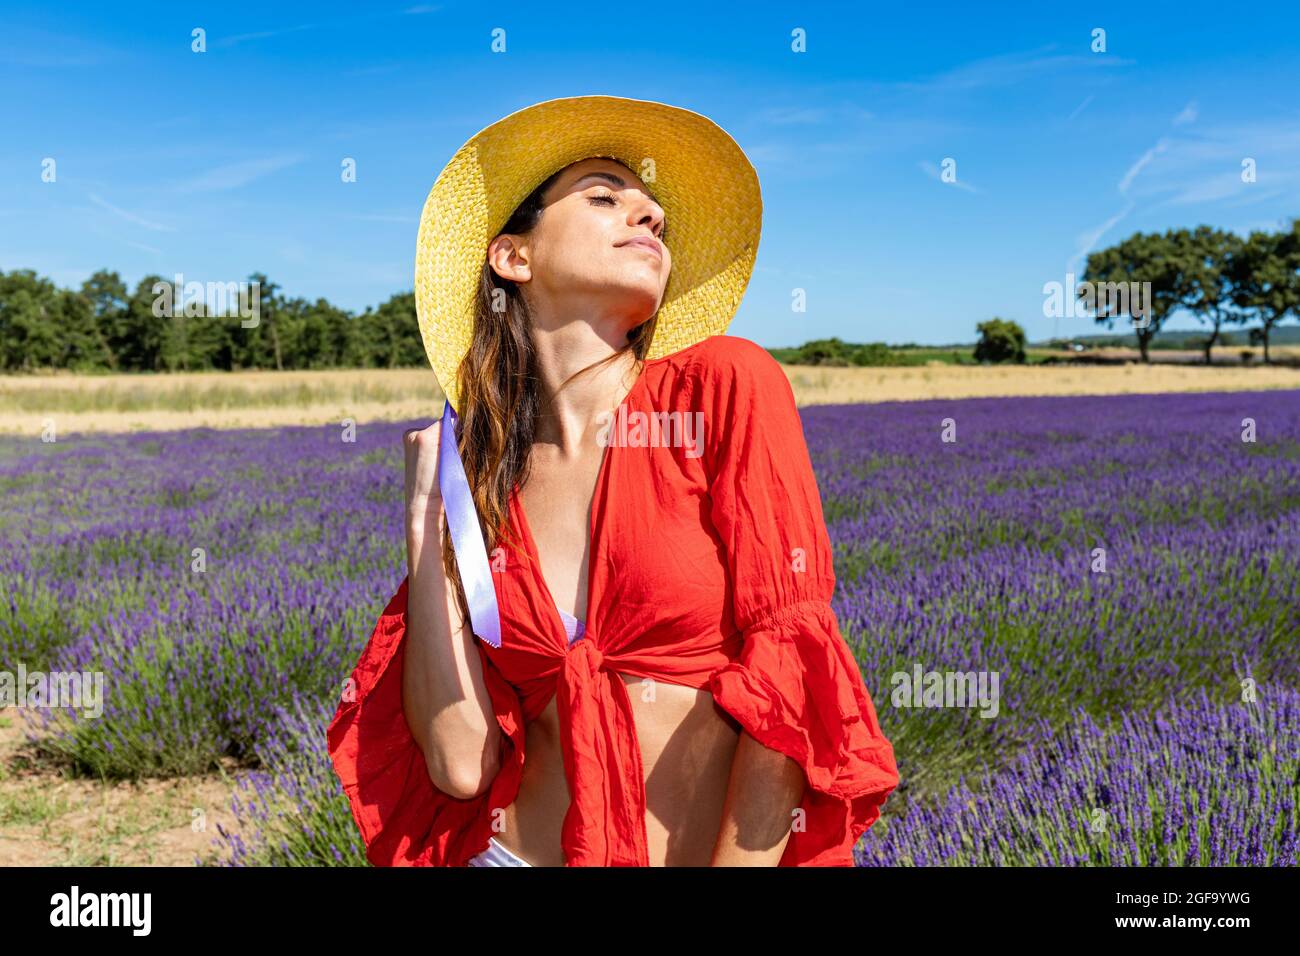 Junge Frau posiert in einem blühenden Lavendelfeld. Sie trägt eine rote Bluse und einen Strohhut. Naturtourismus und Wellness-Konzept. Stockfoto